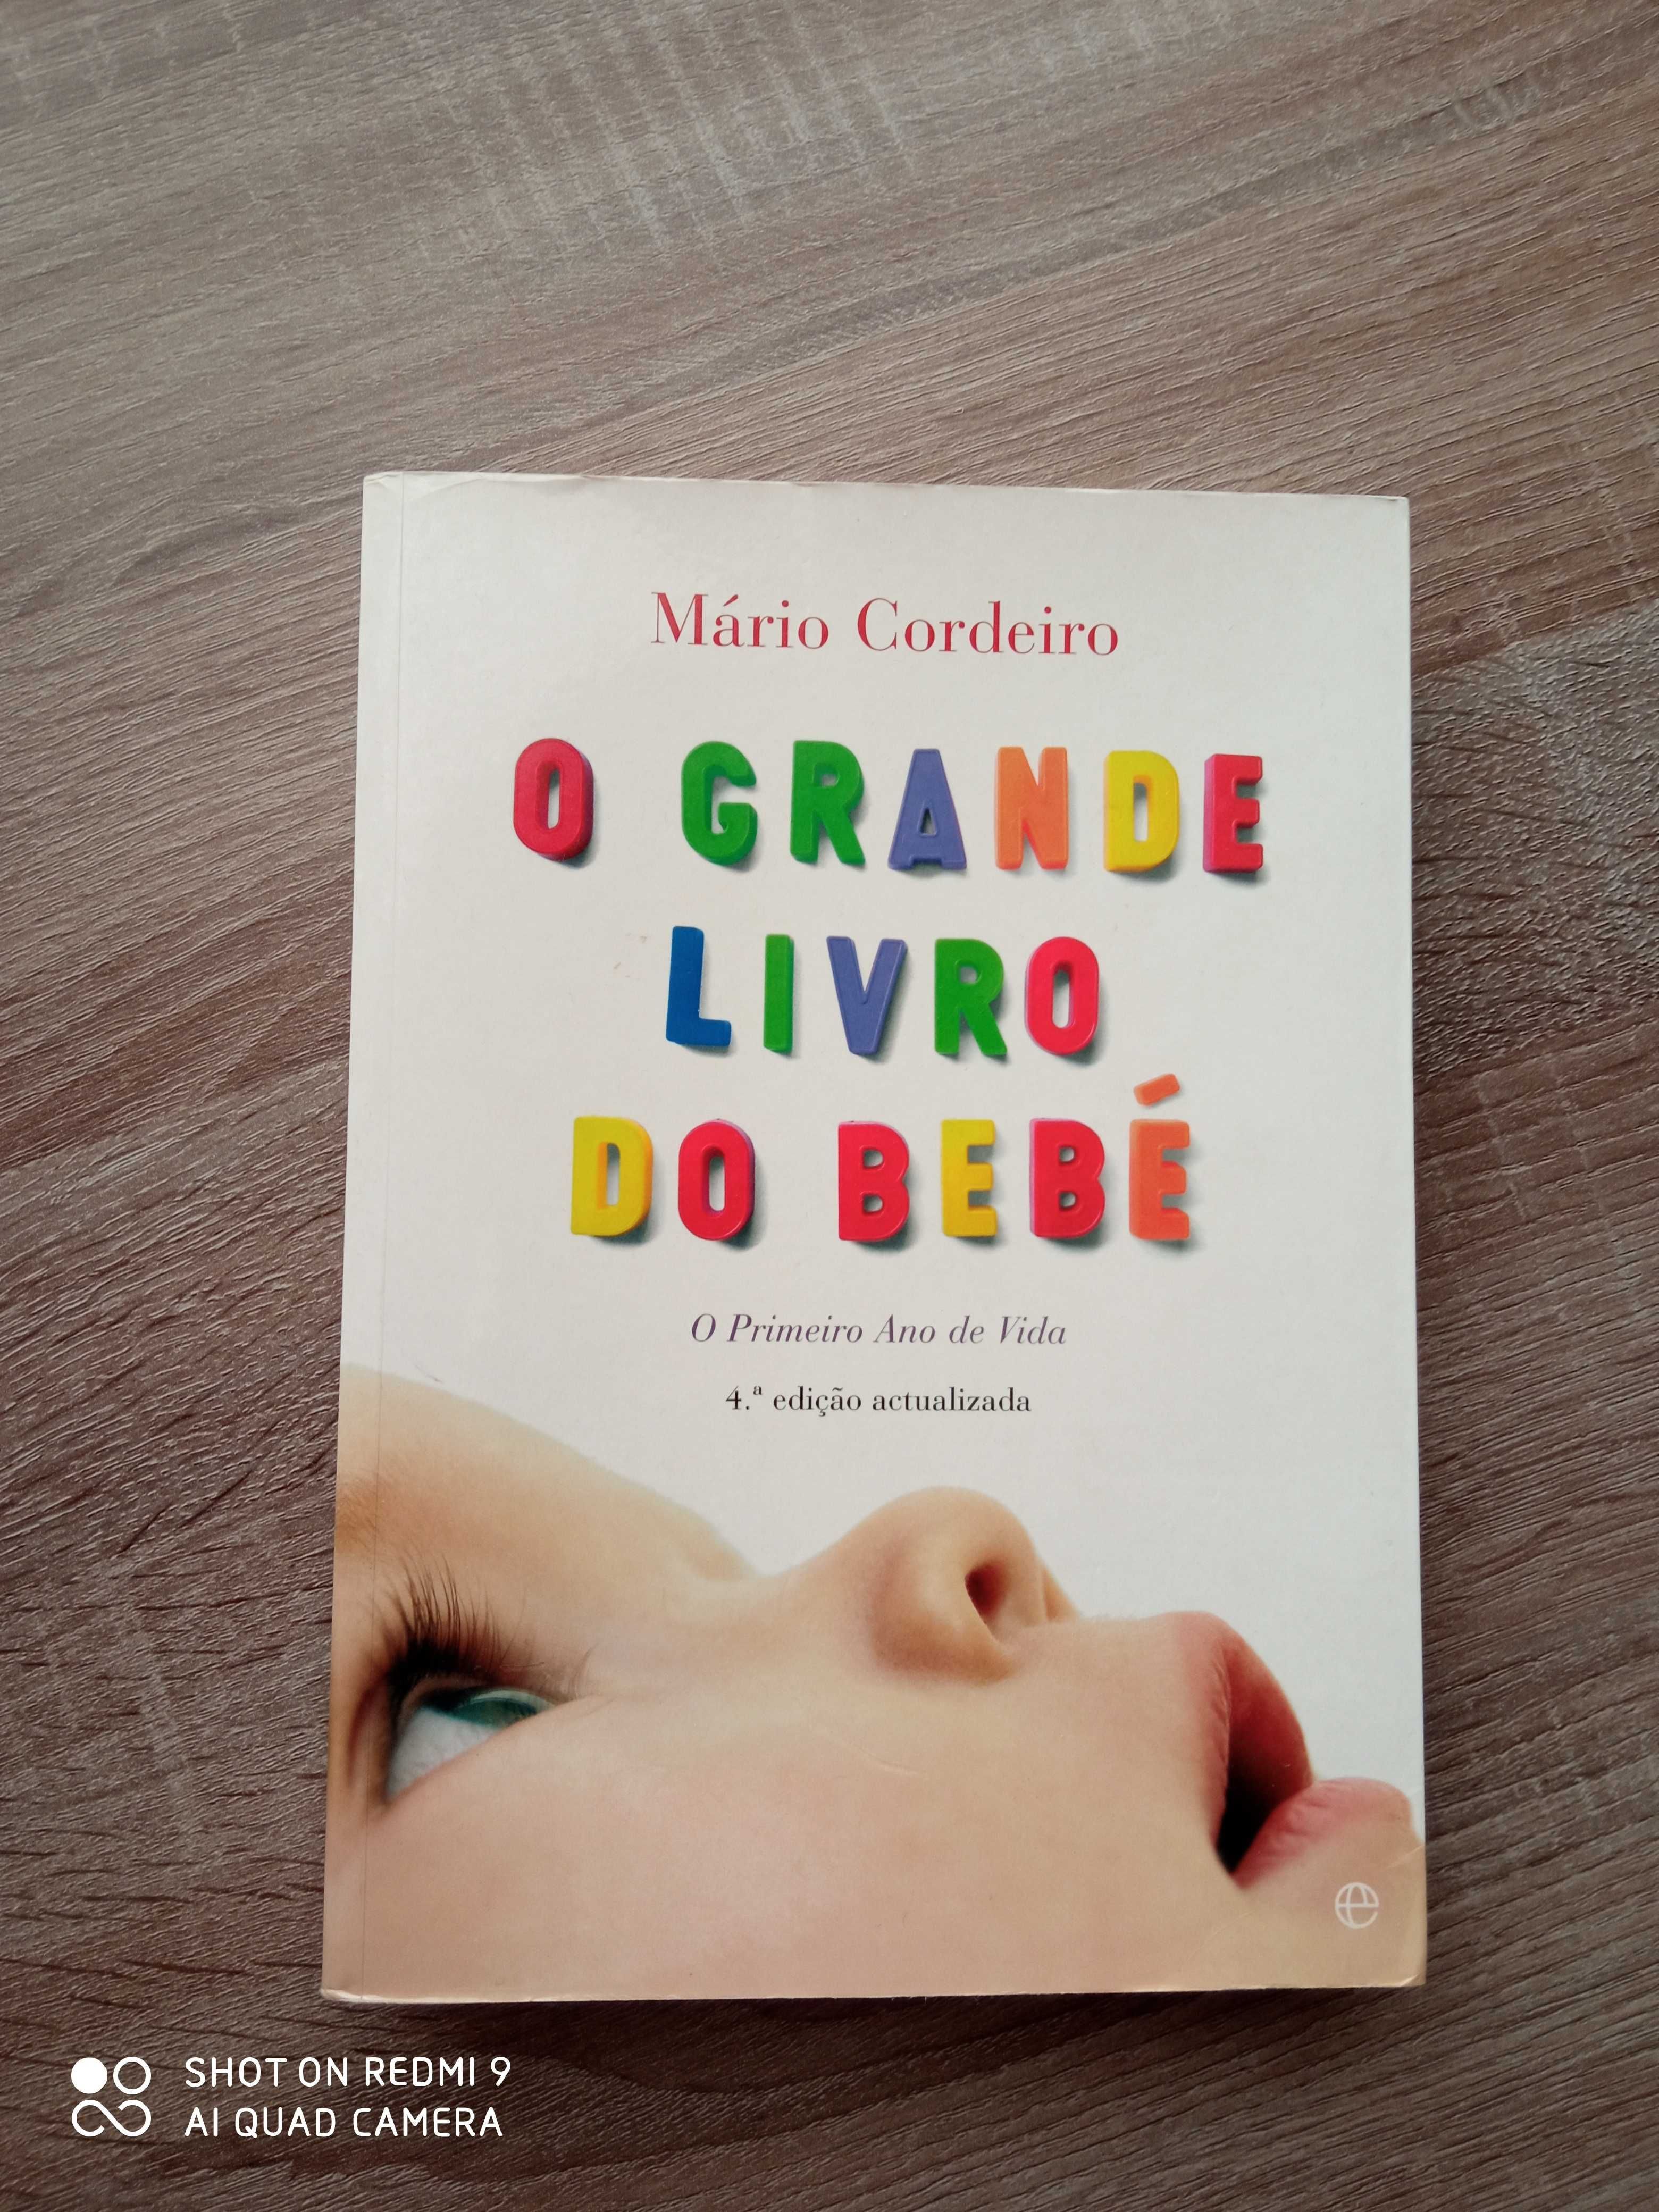 "O grande livro do bebé" de Mário Cordeiro